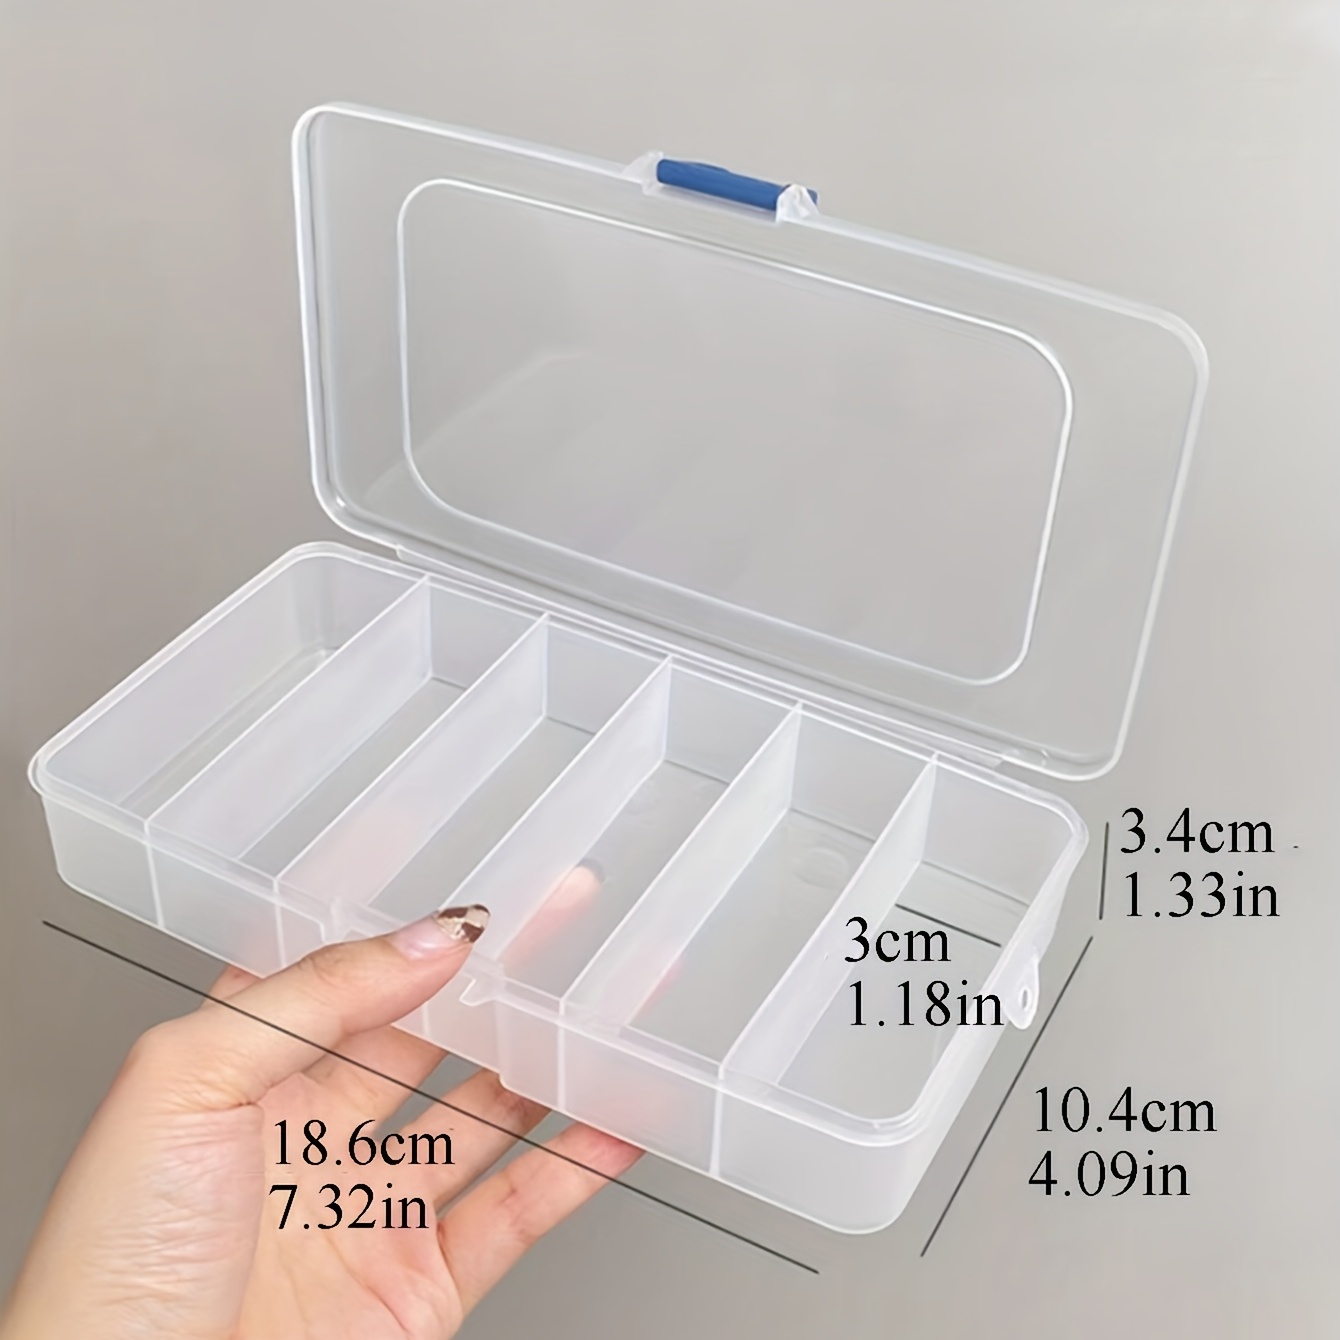 Caja Transparente Con Tapa Clip 52L